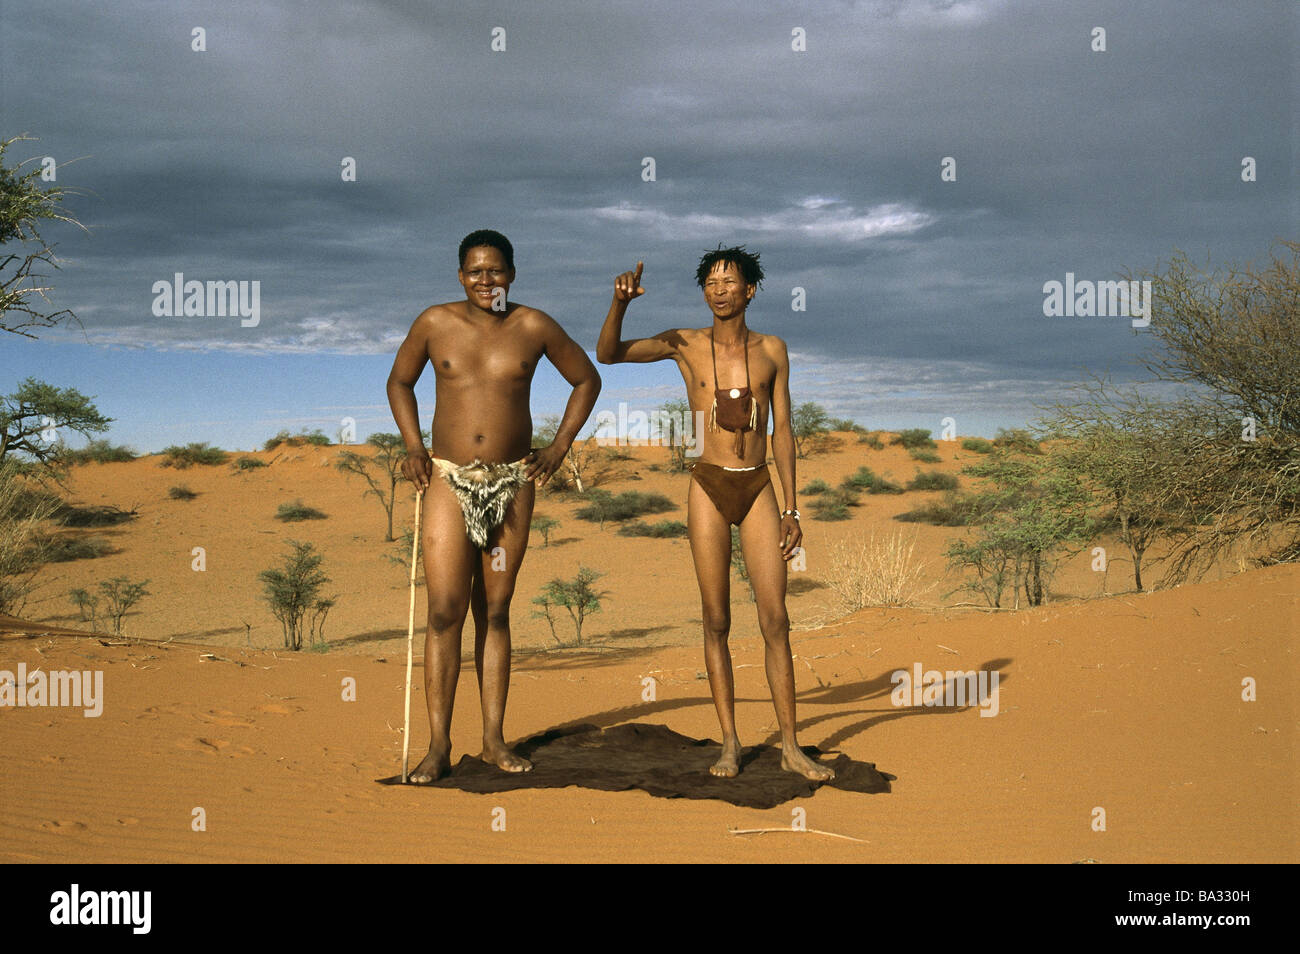 men in desert